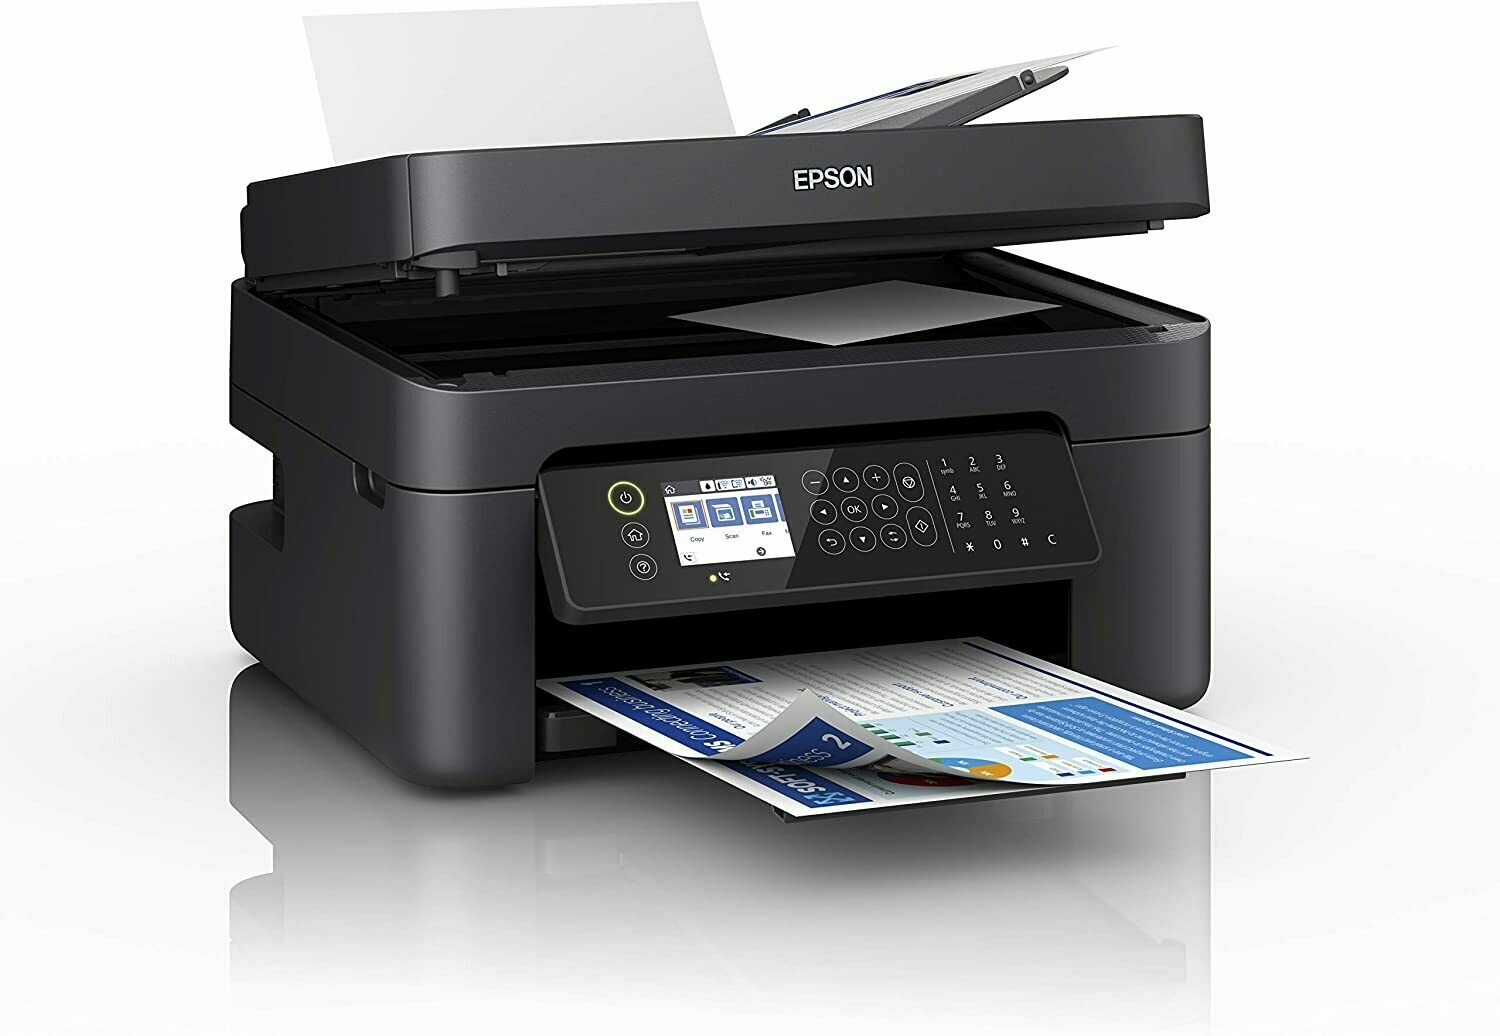 Epson WorkForce WF-2850DWF Print/Scan/Copy/Fax Wi-Fi Printer with ADF, Black